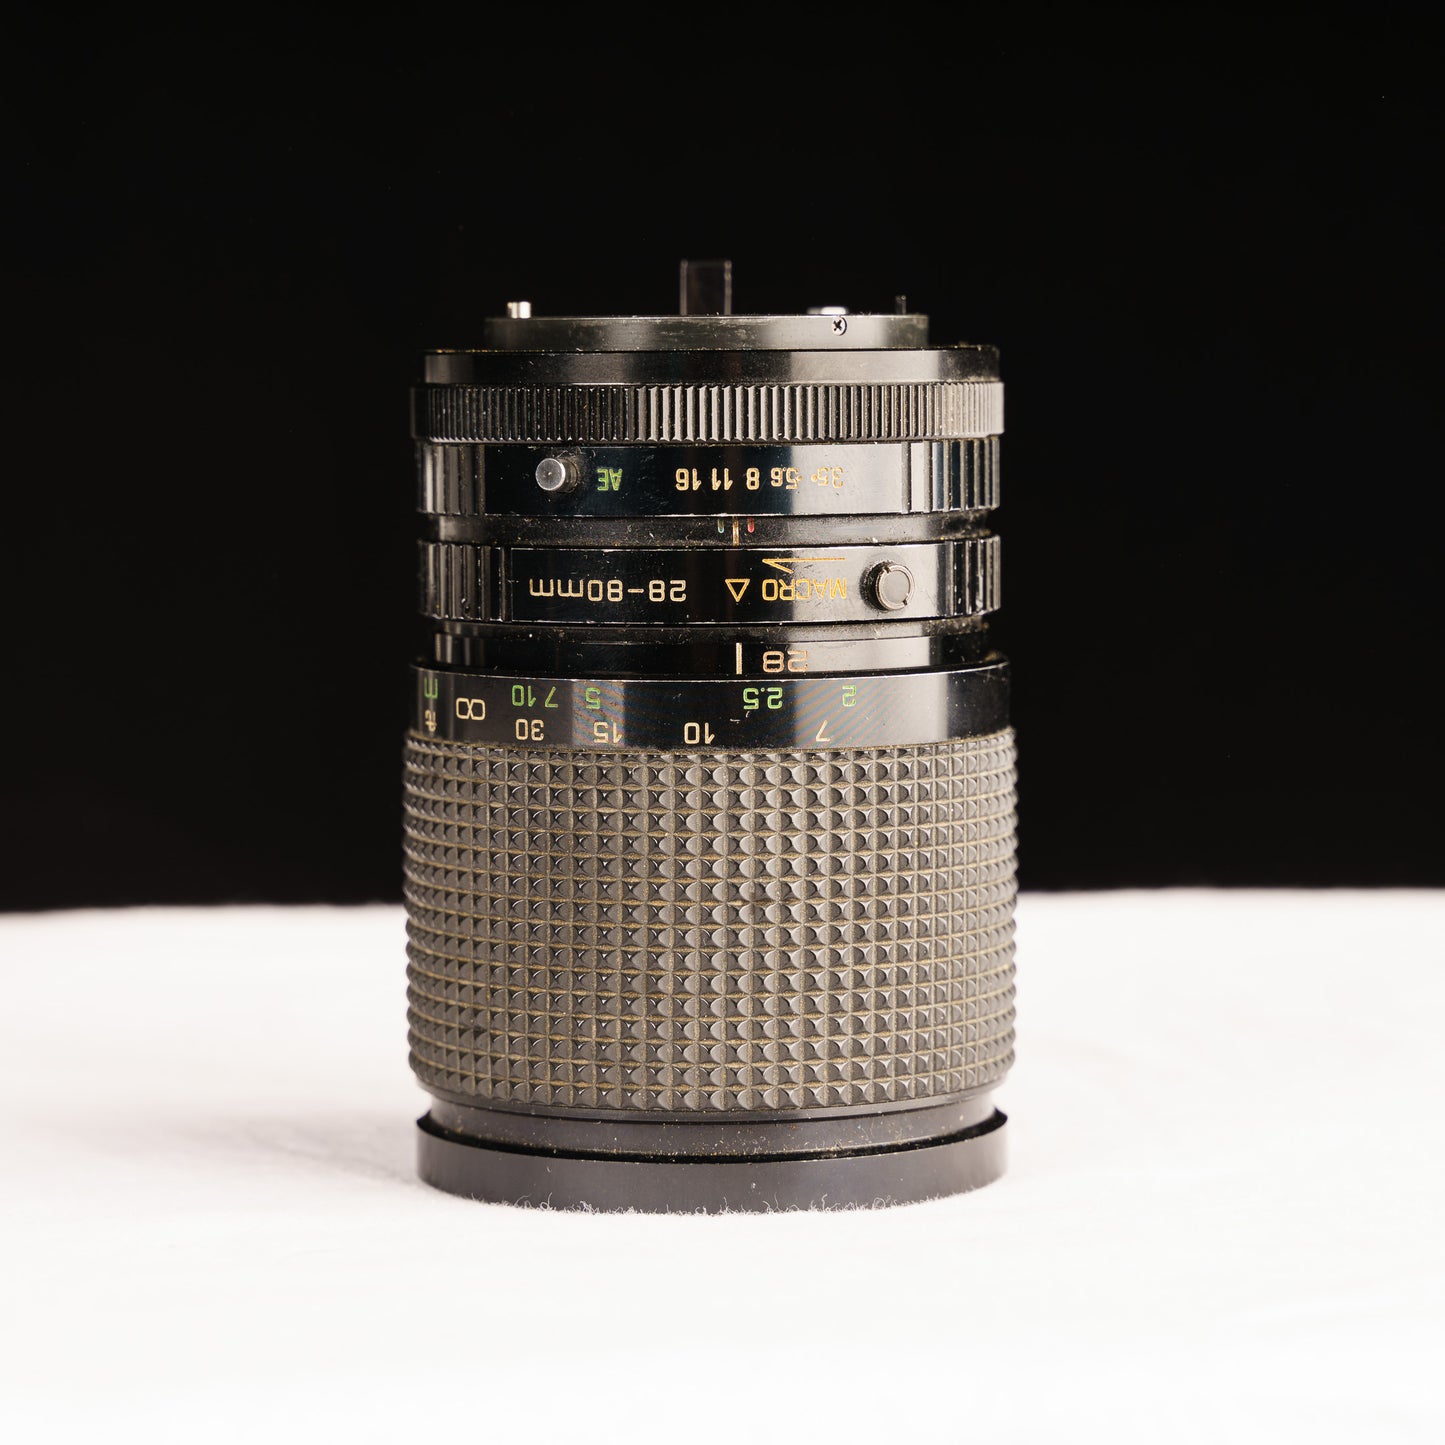 Canon AE-1 35mm Film SLR with Sakar Macro 28-80mm f/3.5-4.5 Lens